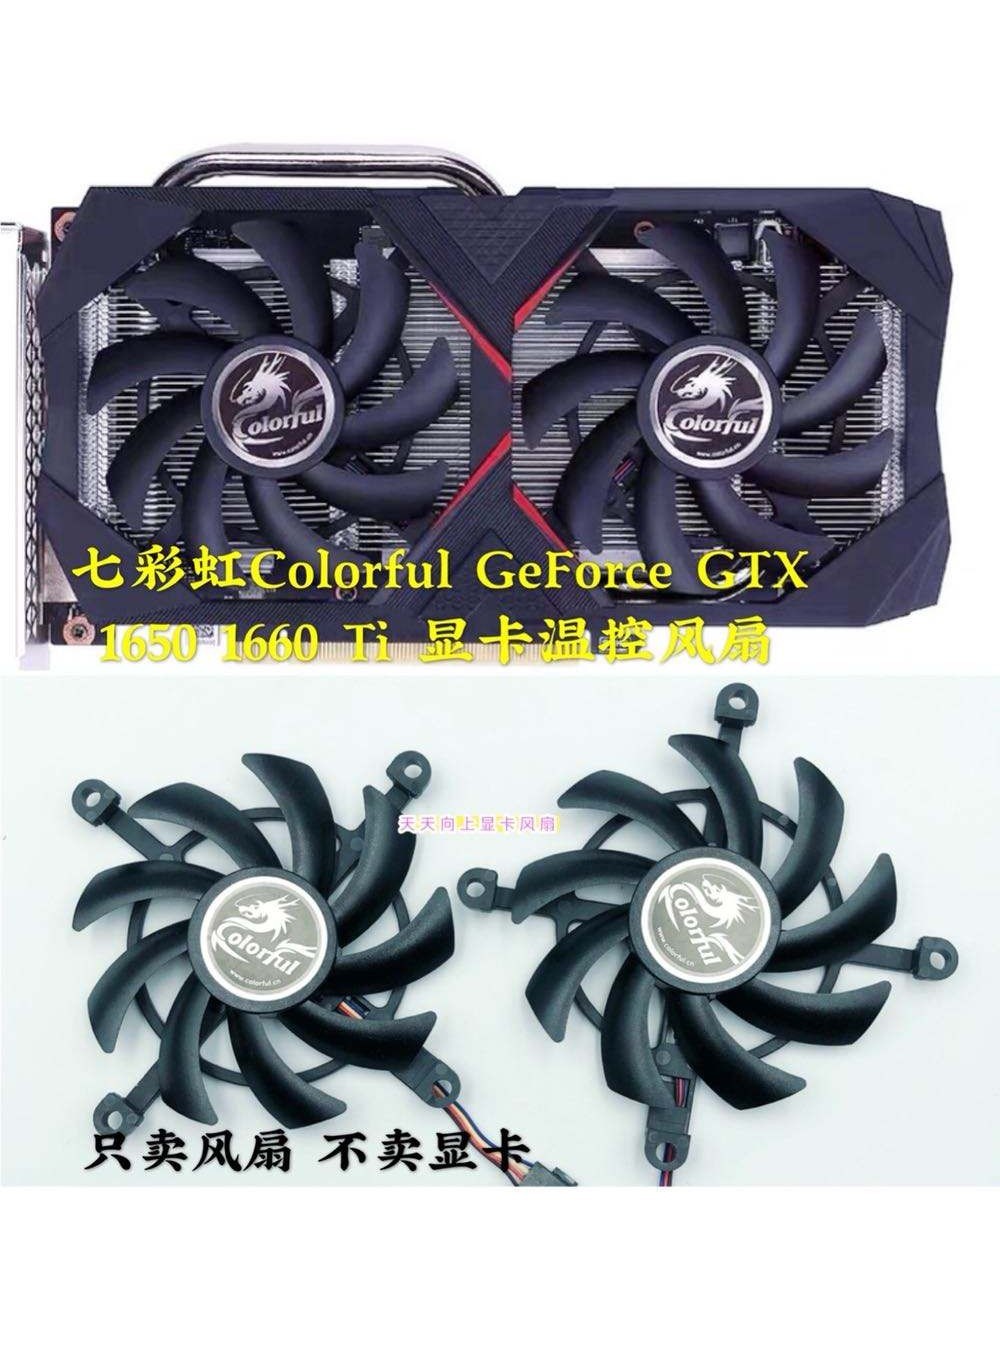 พัดลมควบคุมอุณหภูมิกราฟฟิคการ์ด เสียงเงียบ สีสันสดใส สําหรับ GeForce GTX 1660 Ti 1650